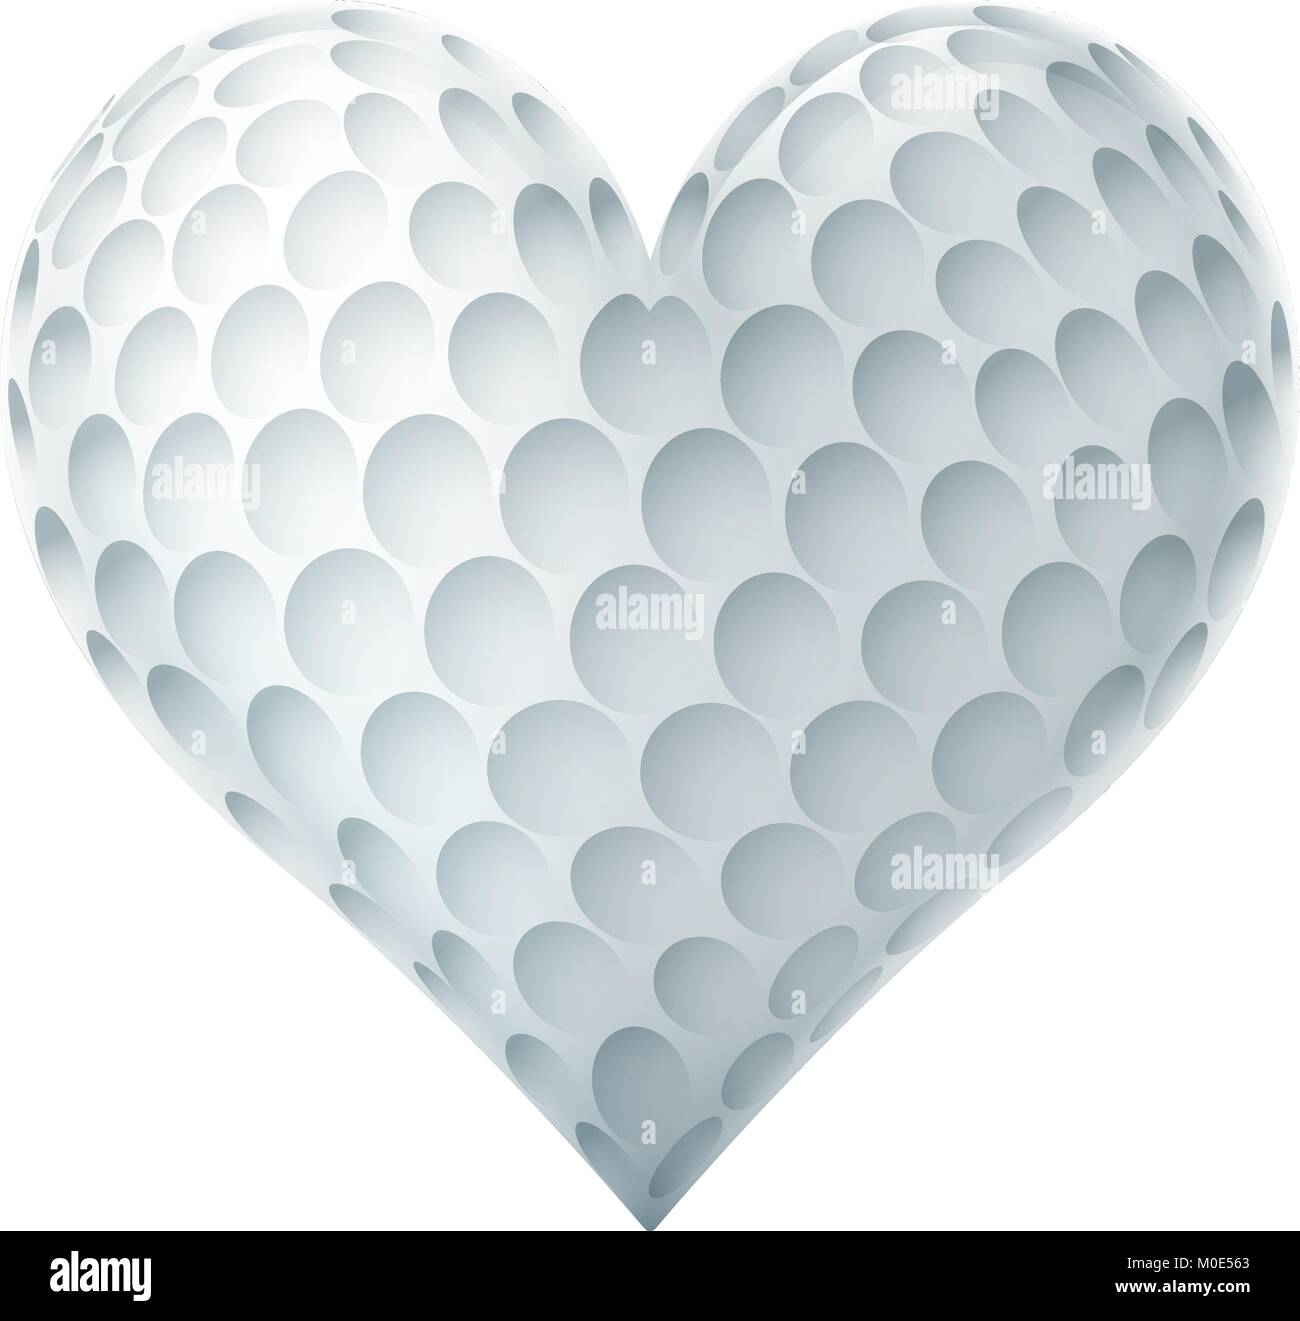 Pallina da Golf In una forma di cuore Illustrazione Vettoriale